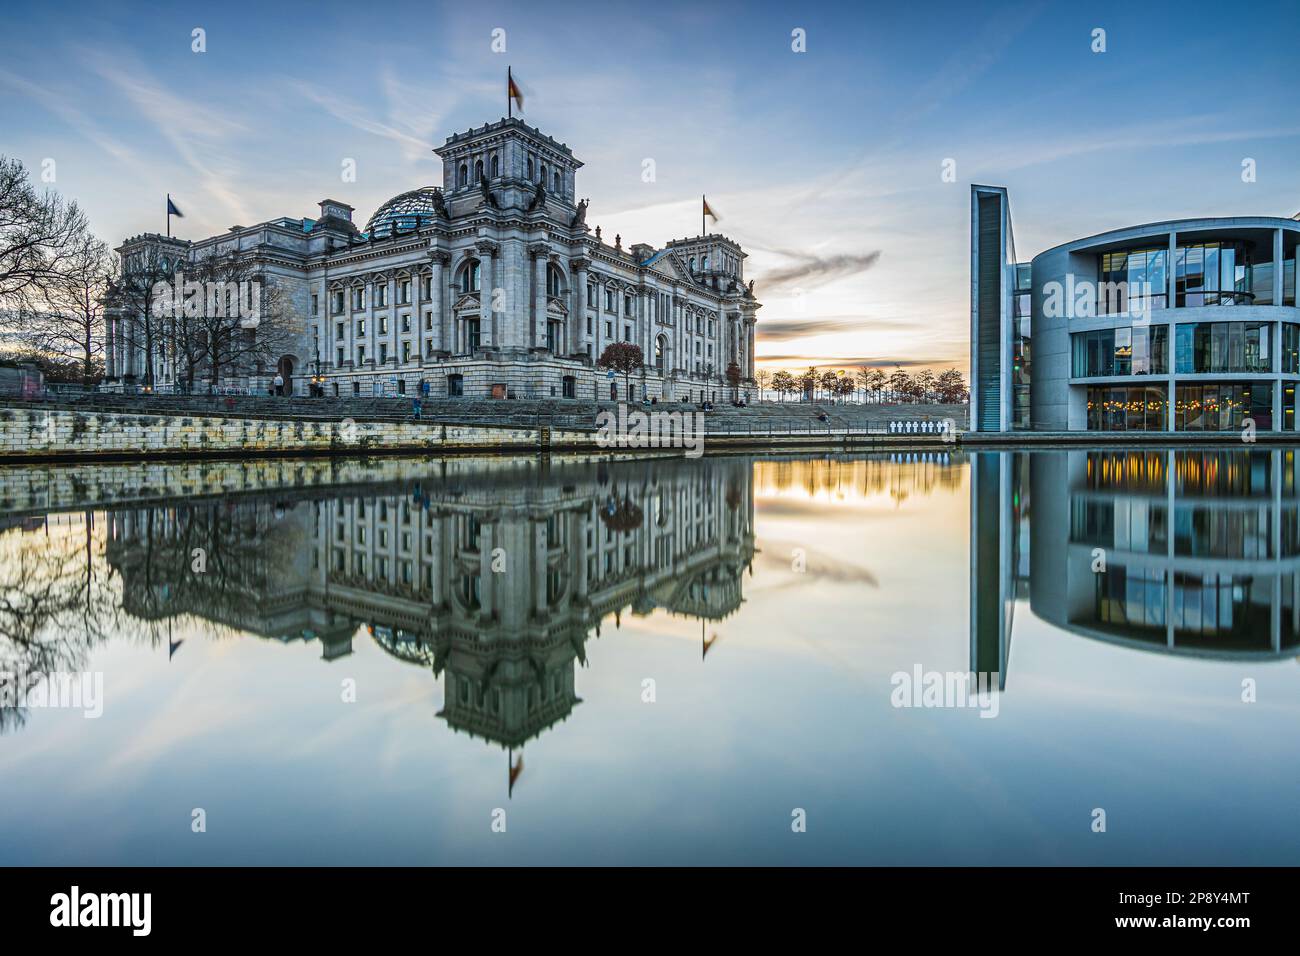 Regierungsbezirk in Berlin an einem Wintertag. Reichstag und Paul Löbe Haus am Abend bei Sonnenuntergang. Spree mit Reflexion auf der Wasseroberfläche Stockfoto